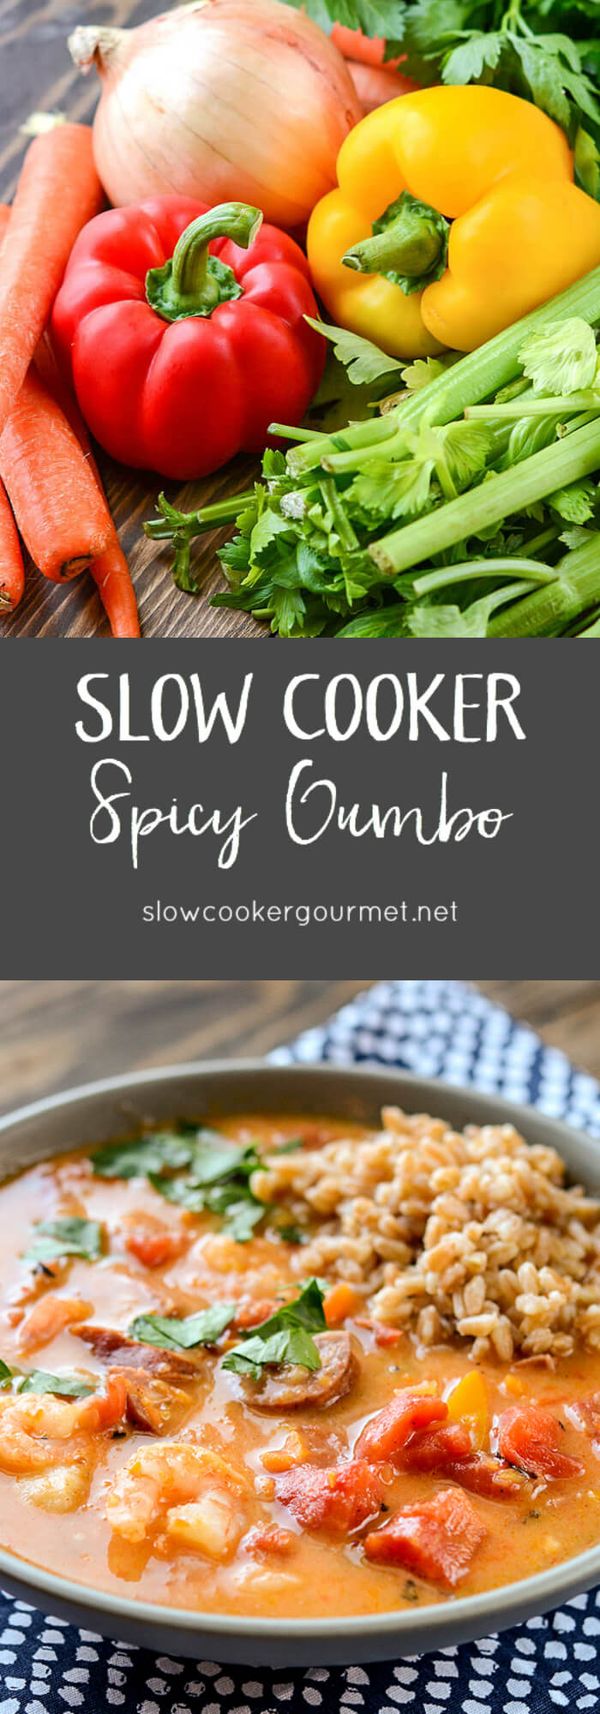 Slow Cooker Spicy Gumbo